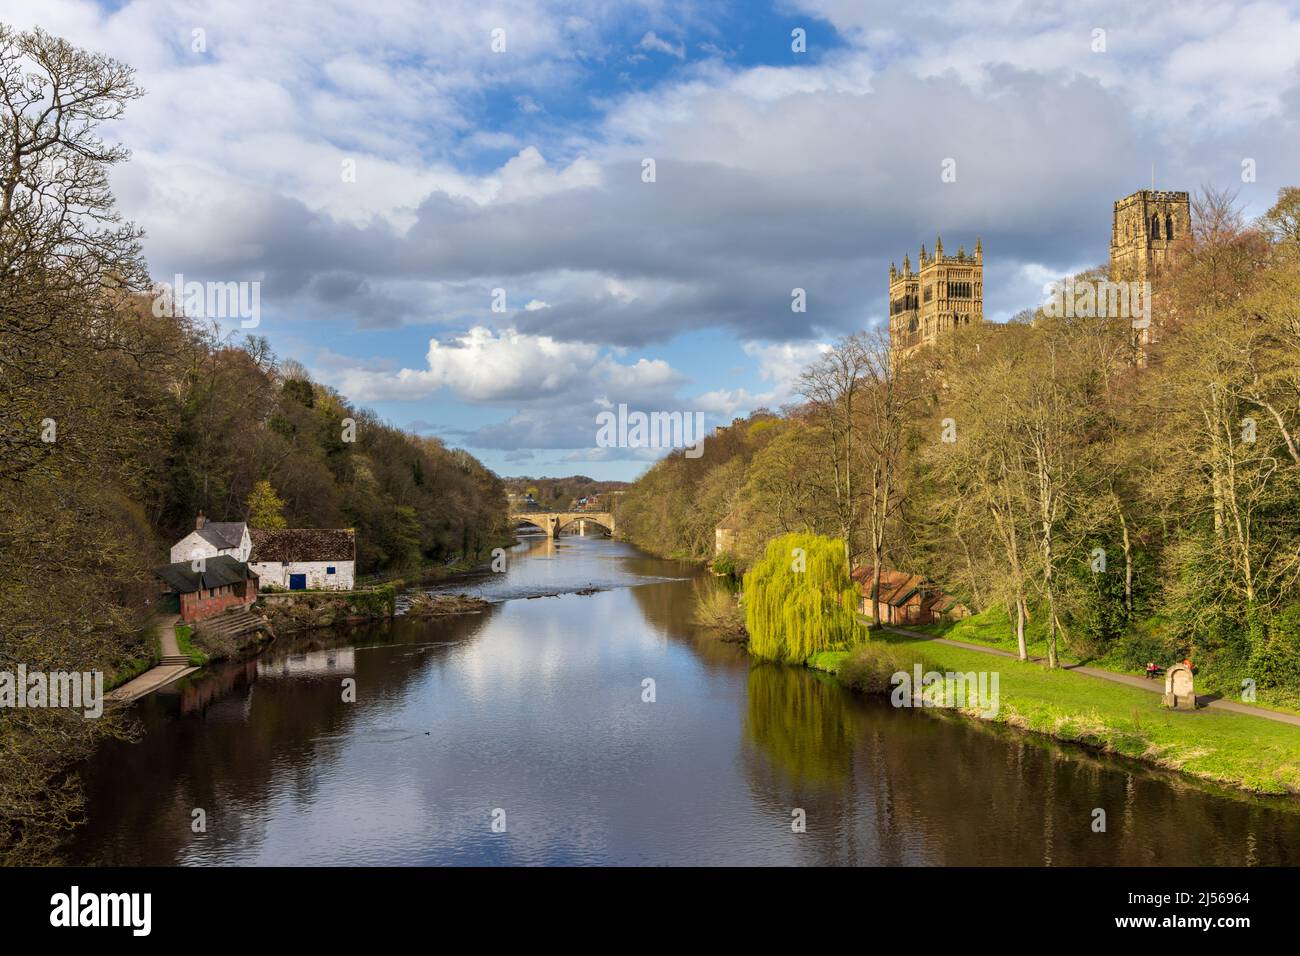 Une vue sur le fleuve Wear avec la magnifique cathédrale de Durham sur la droite dans la ville de Durham. Pris un jour de printemps brillant. Banque D'Images